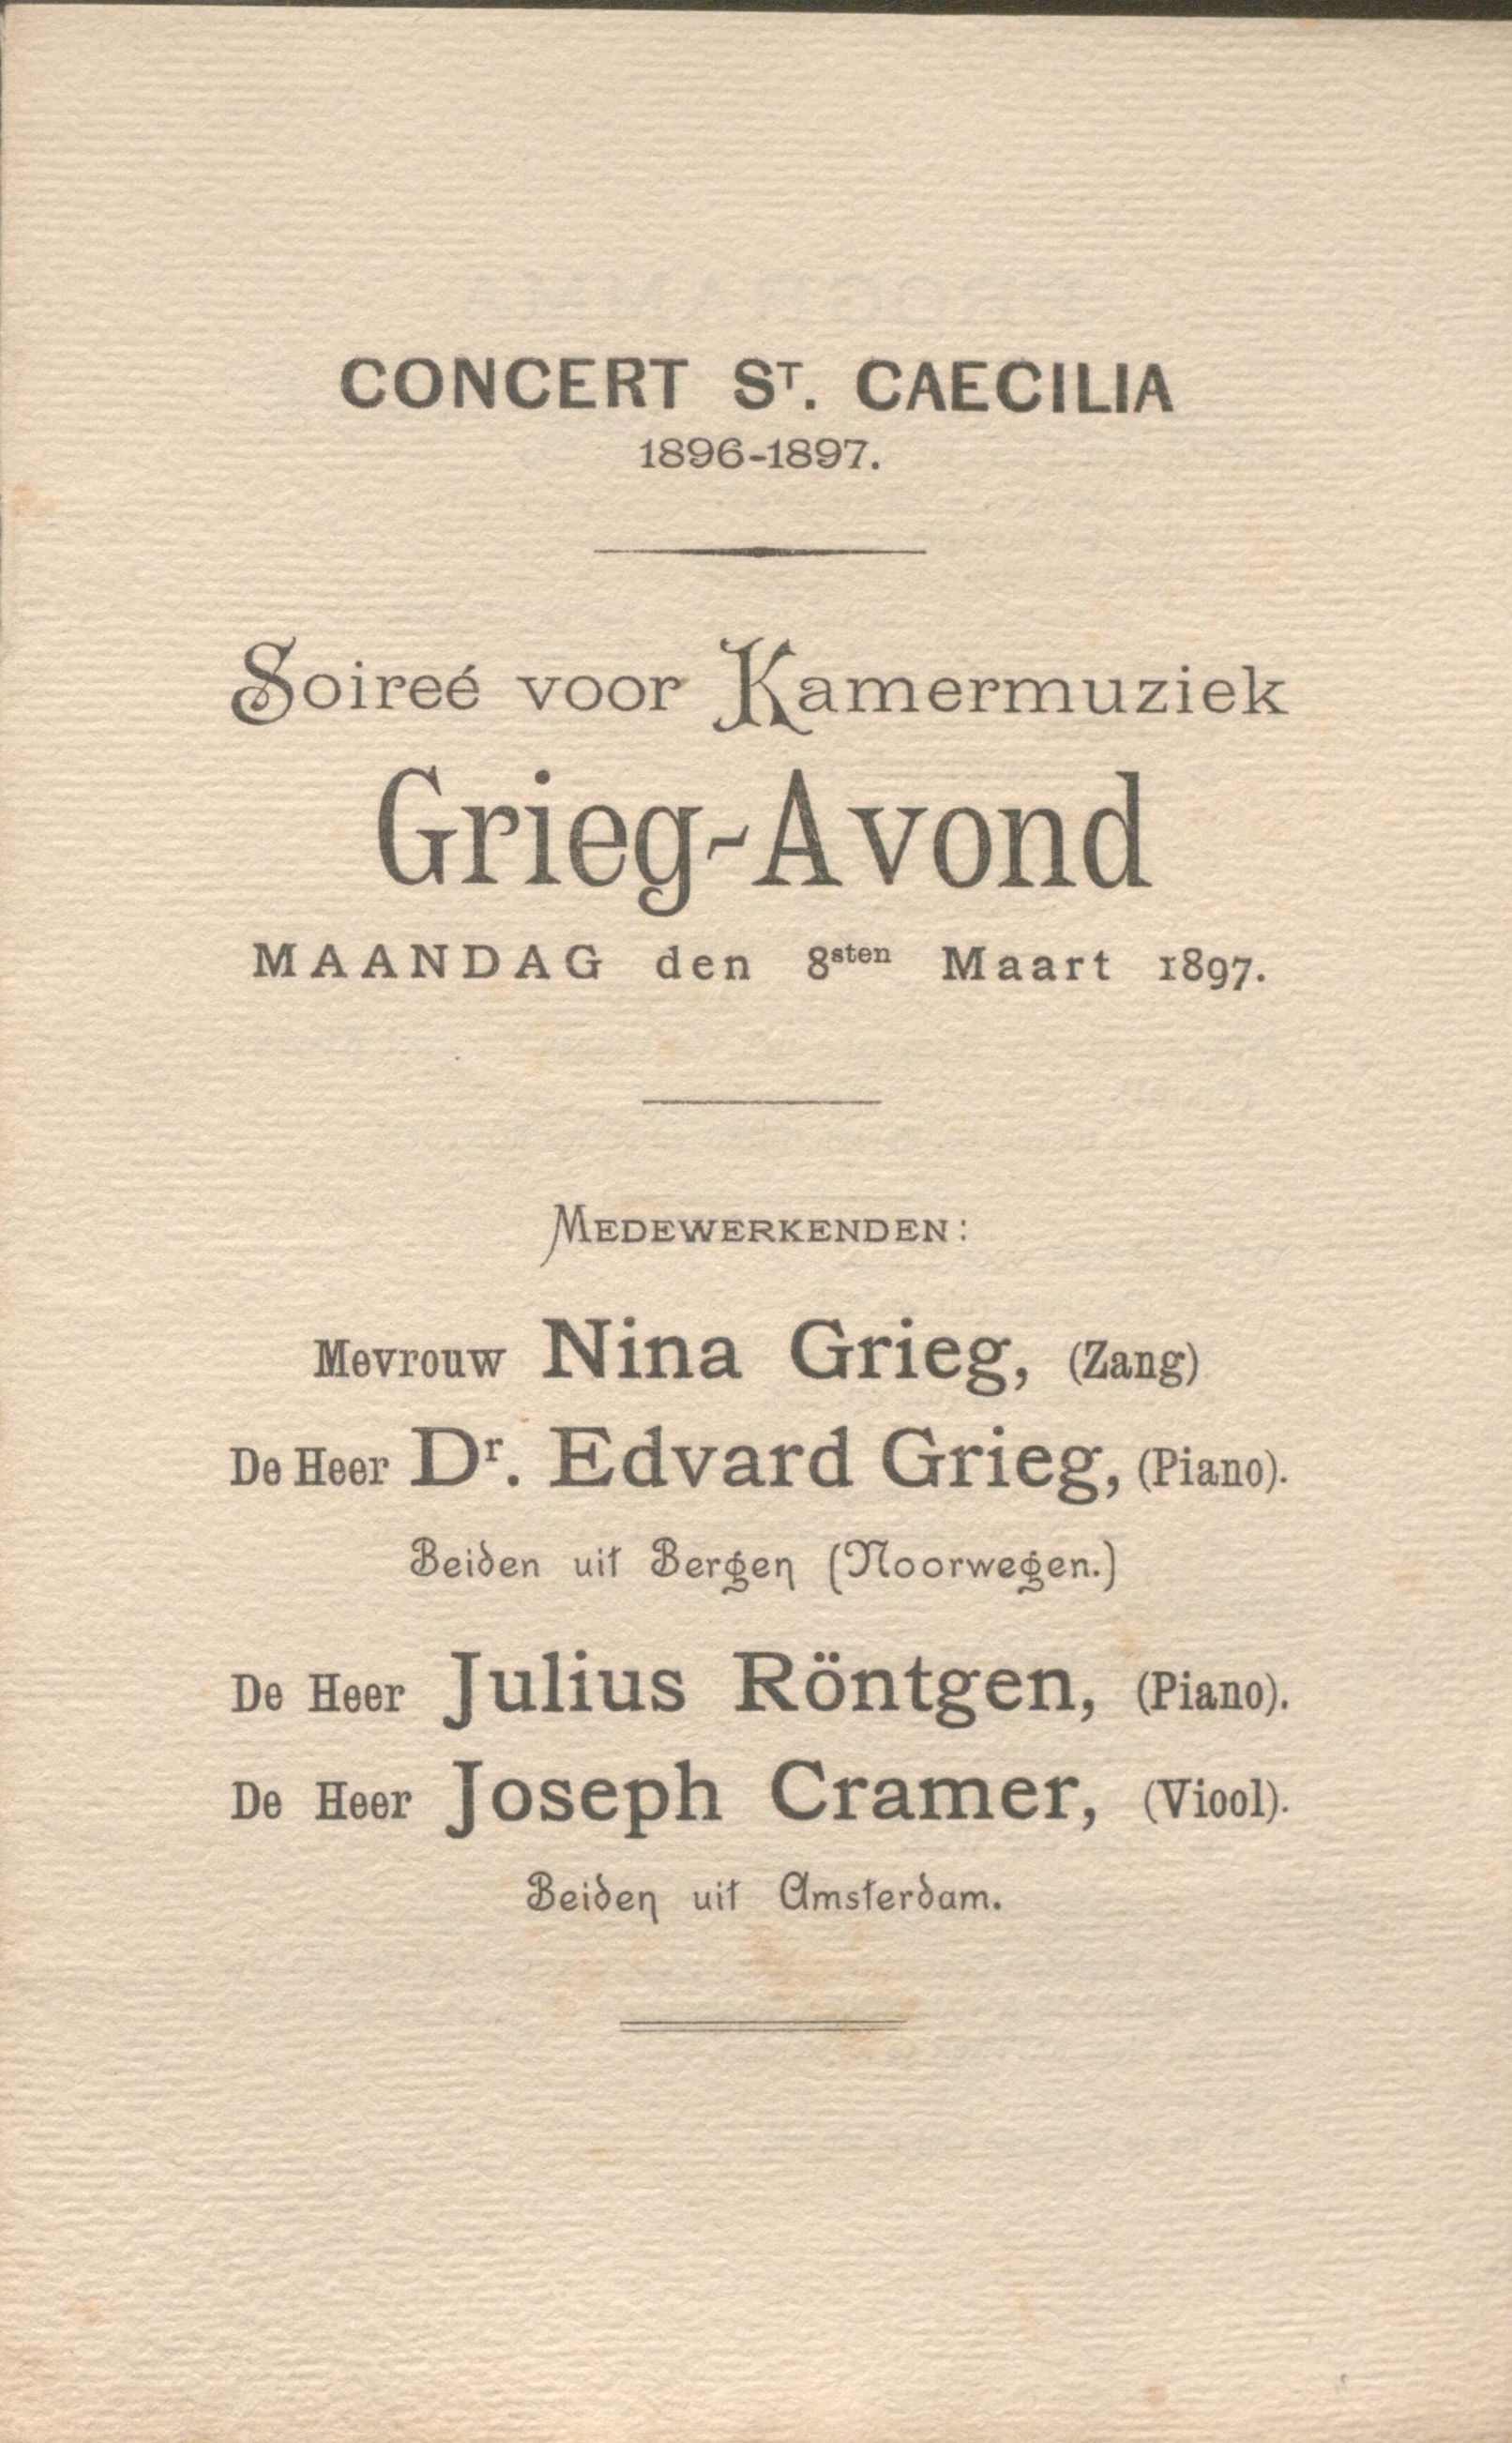 Onderdeel van een gedrukt programma van St. Caecilia uit 1897.